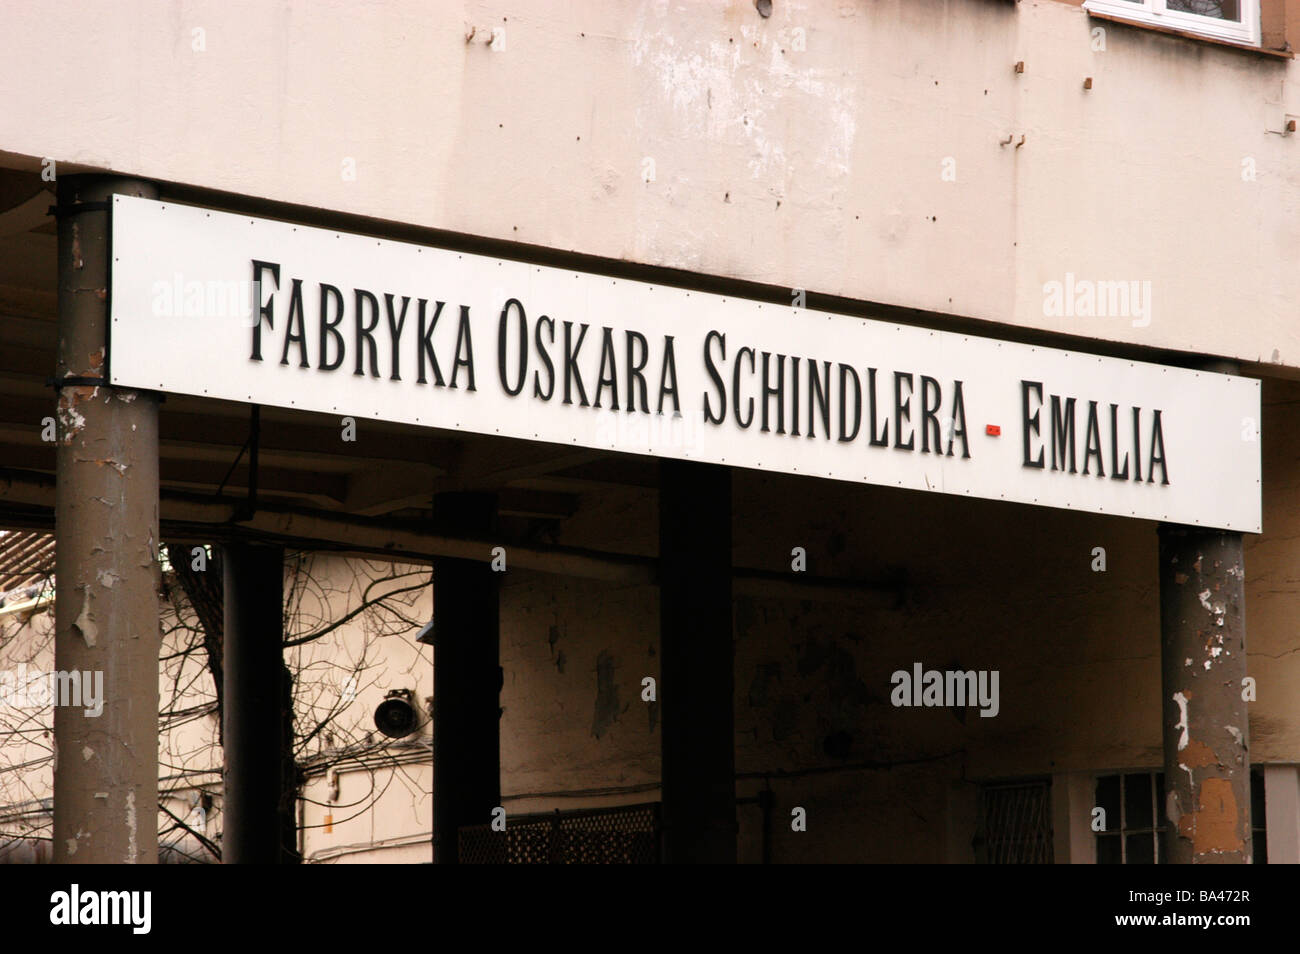 Le signe sur l'usine d'origine (Oskar Schindler oscar) établi pour sauver des juifs des camps de concentration à Cracovie Pologne Banque D'Images